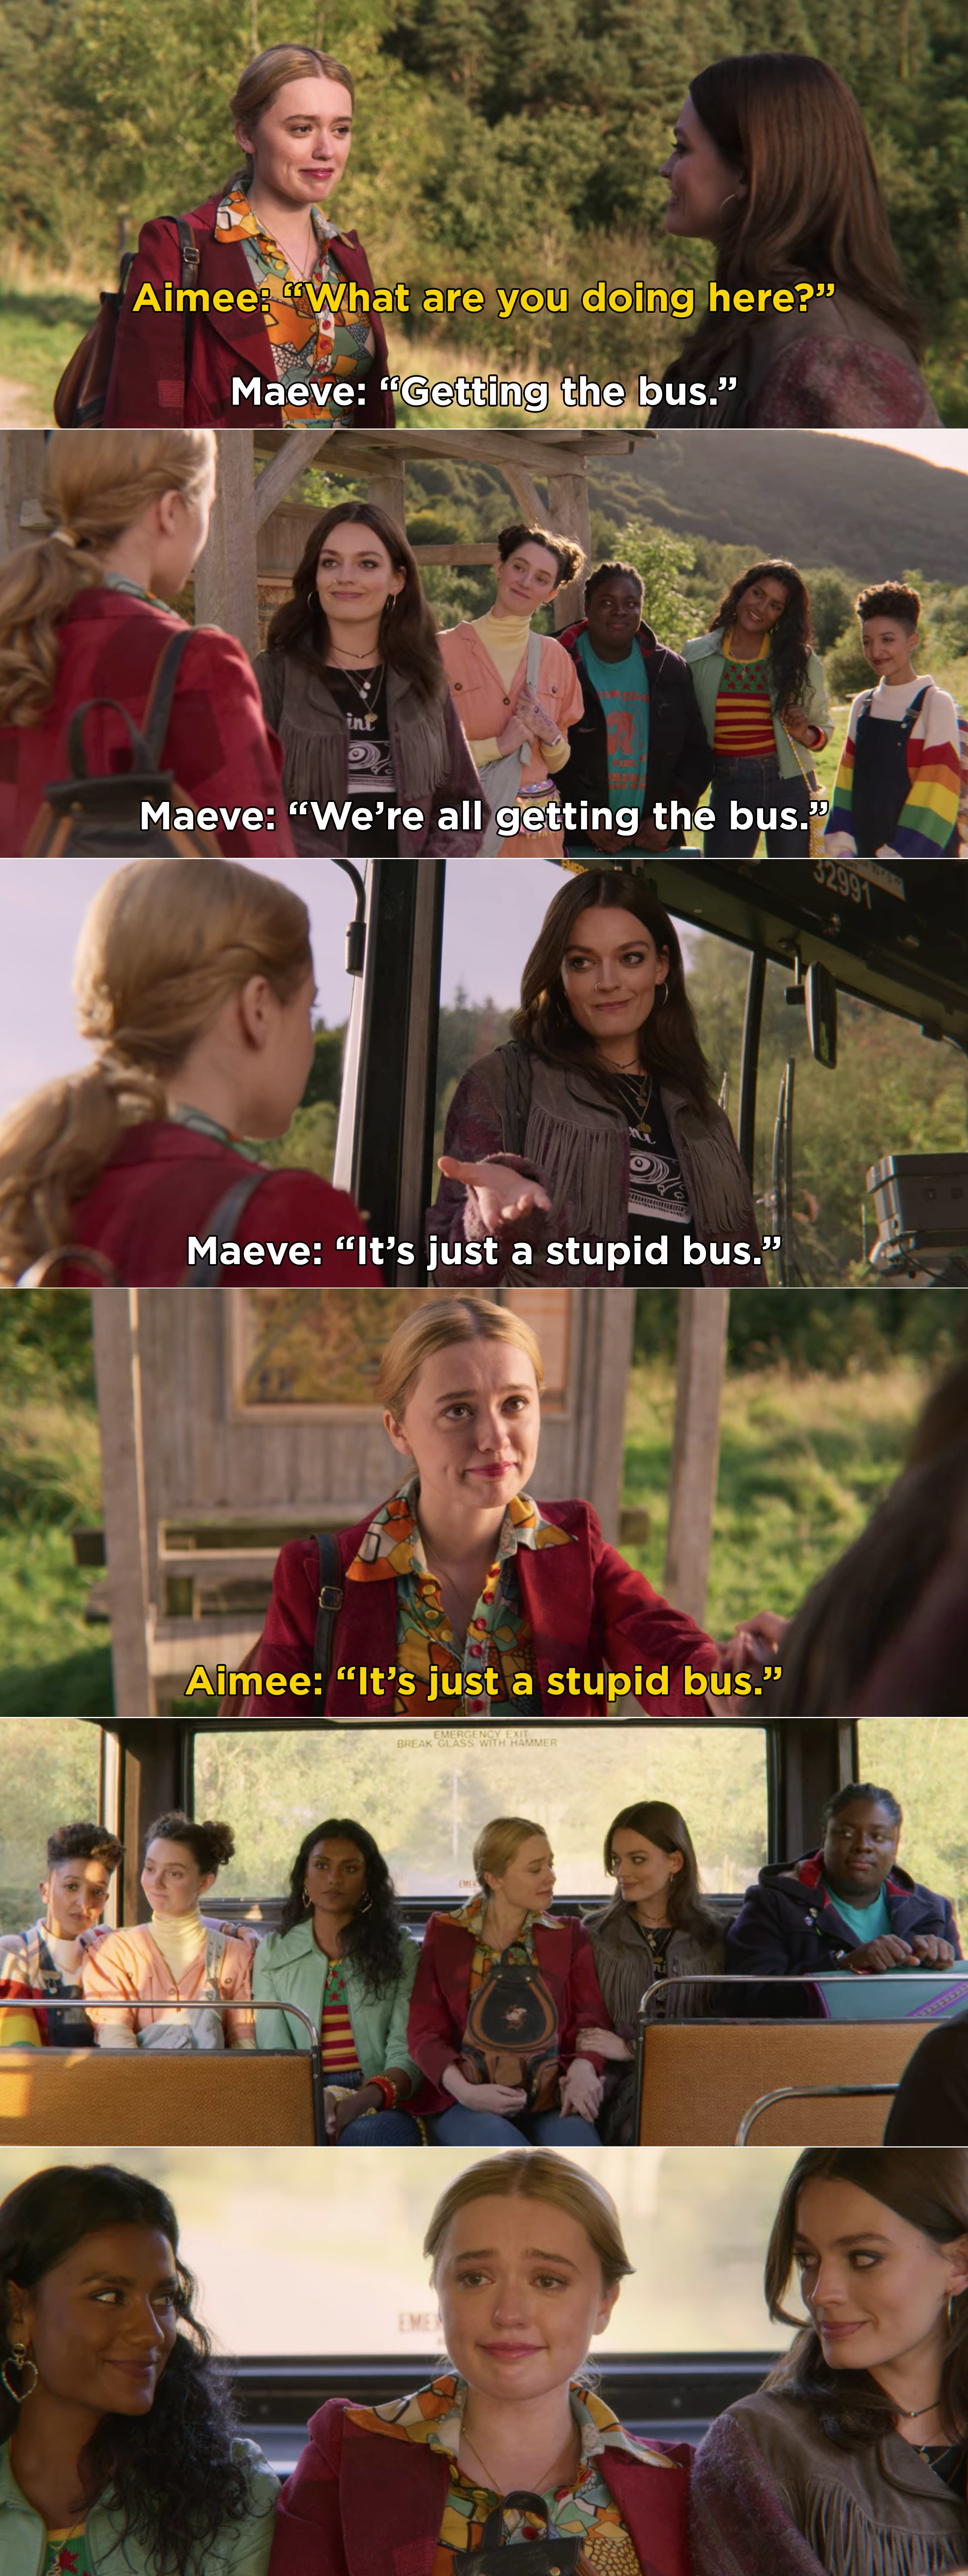 玛弗告诉艾米,他们都是在公共汽车上